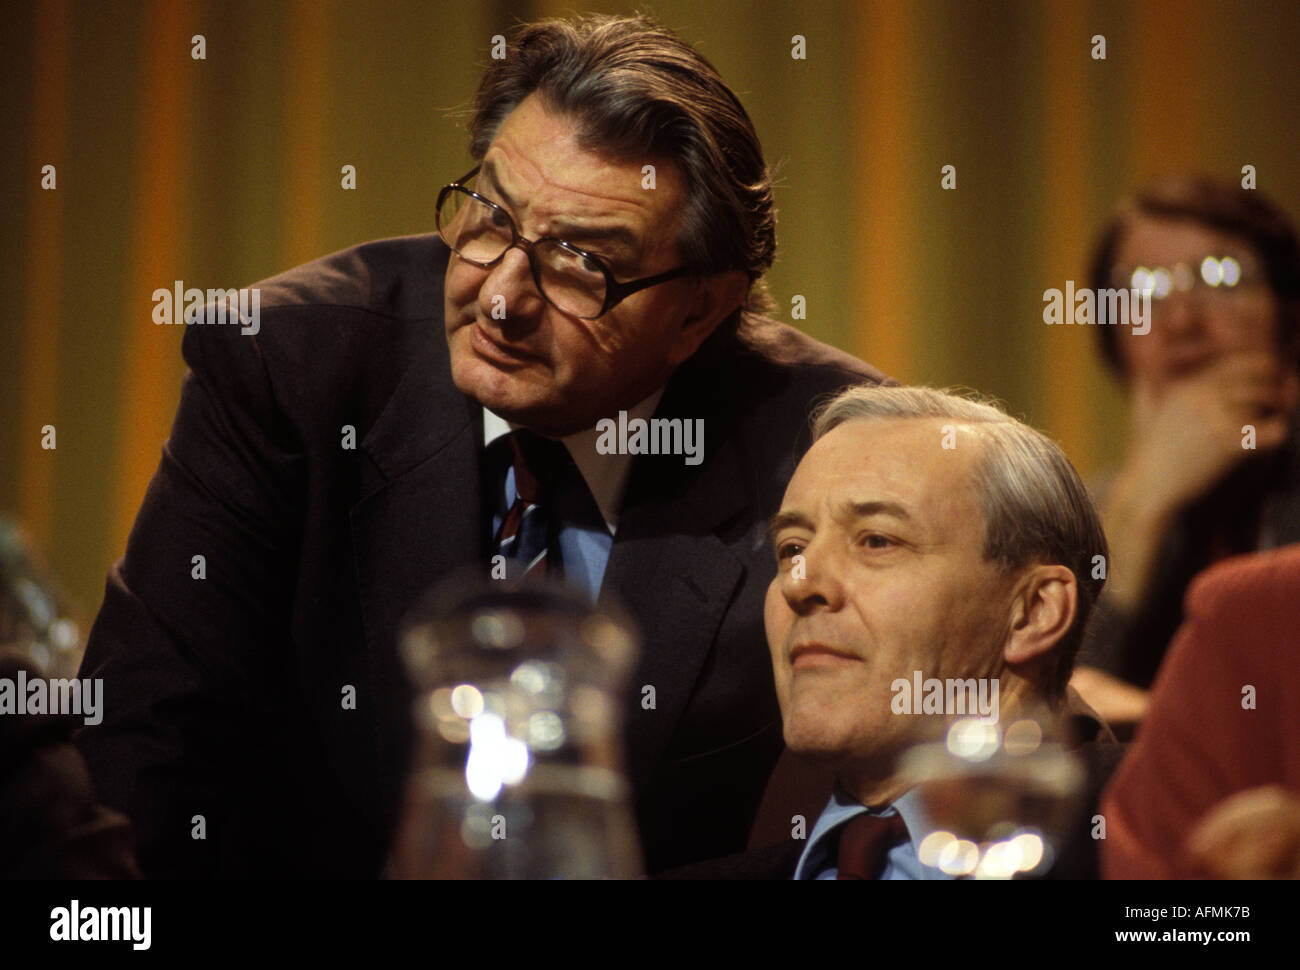 Tony Benn député, (assis) parlant avec Eric Heffer (à gauche) Labour Party Conference Brighton. Octobre 1977 Royaume-Uni. HOMER SYKES Banque D'Images